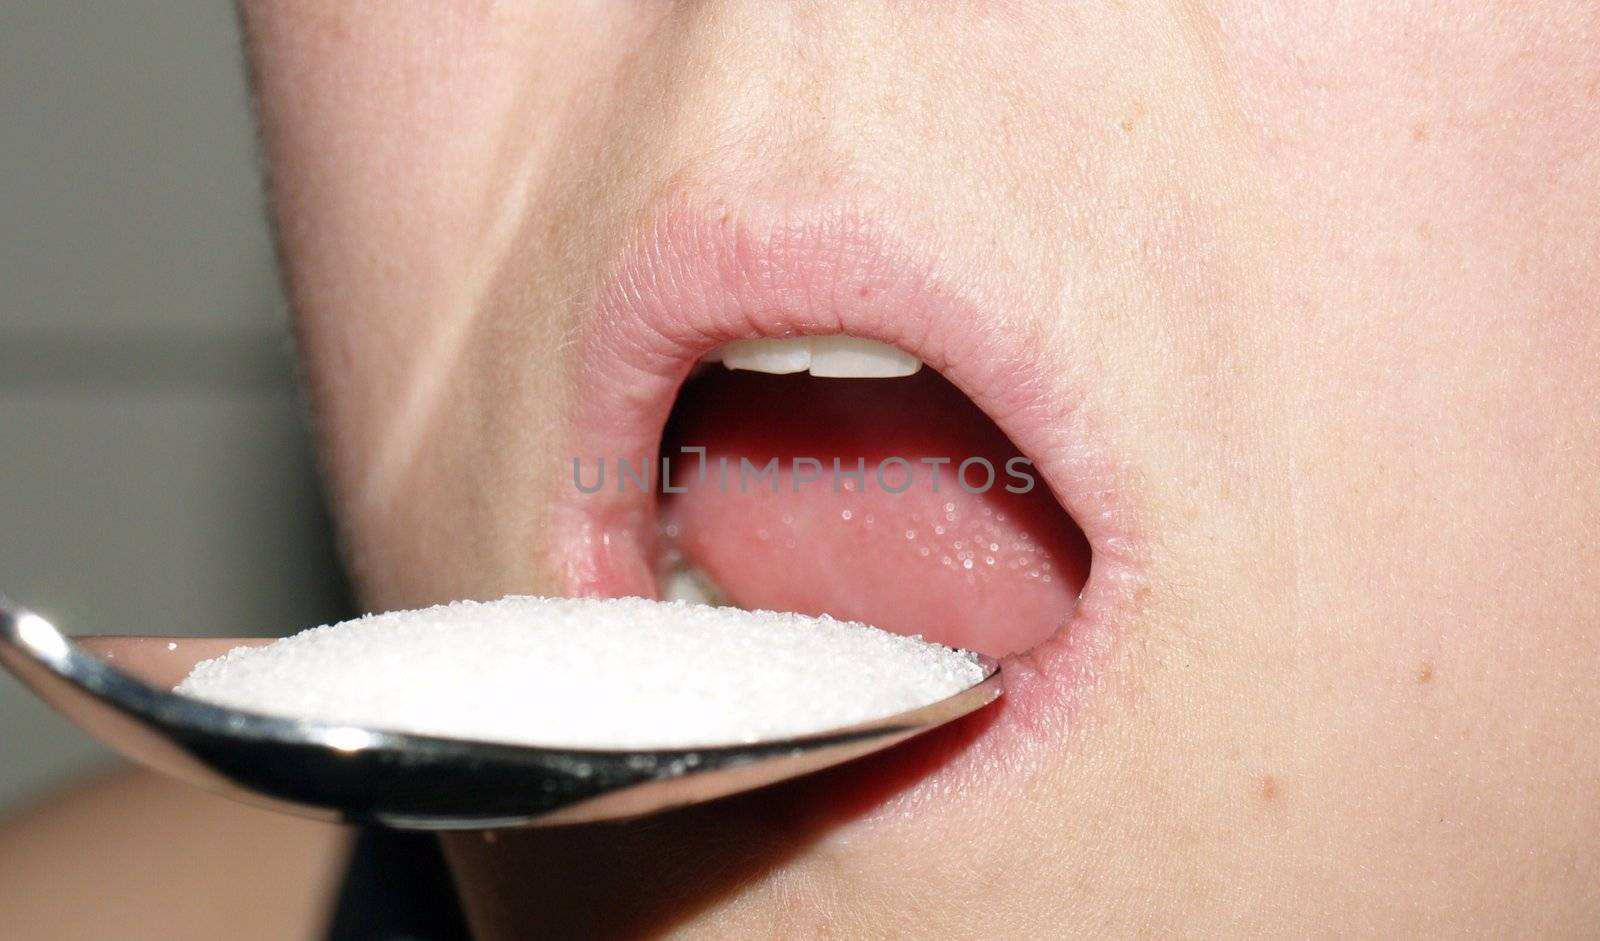 eating sugar by viviolsen